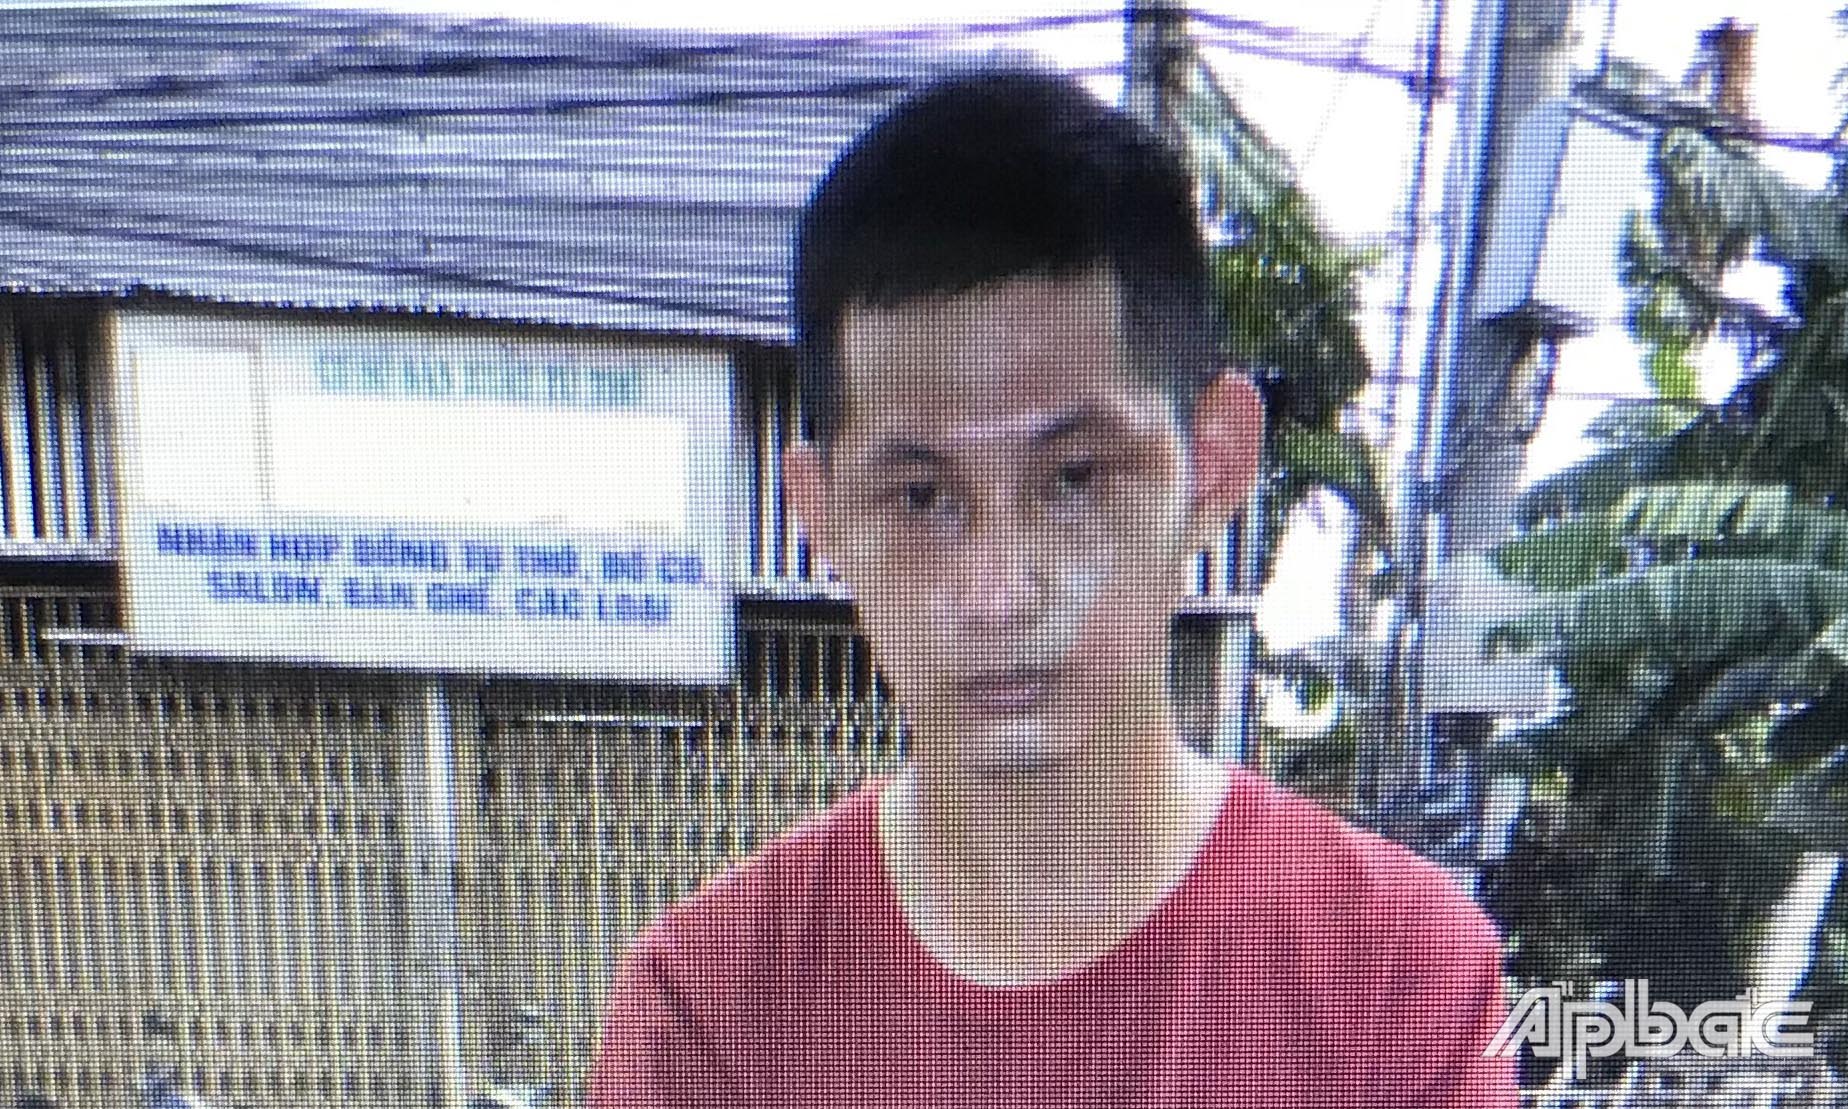 Phong bị bắt giữ.